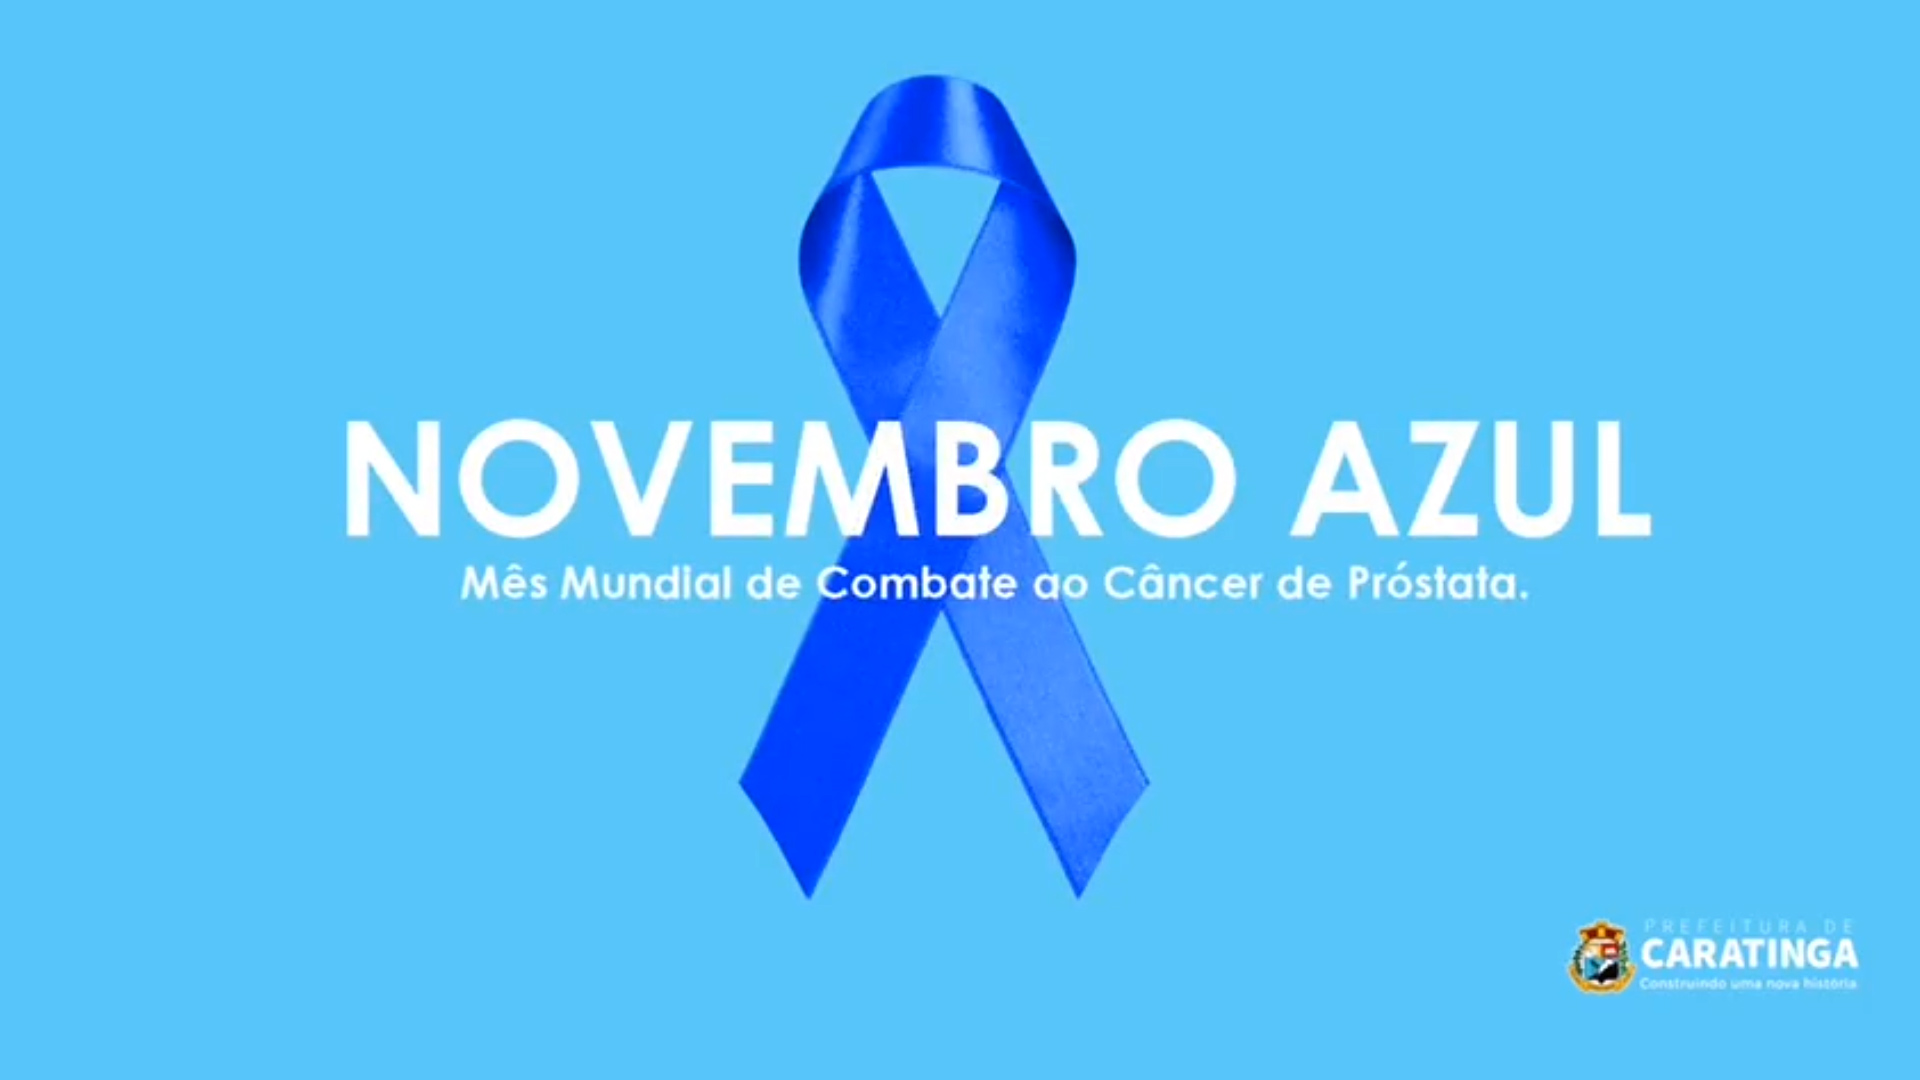 Prefeitura Municipal de Ipatinga - Novembro Azul atrai centenas de homens  para ações esportivas e de saúde